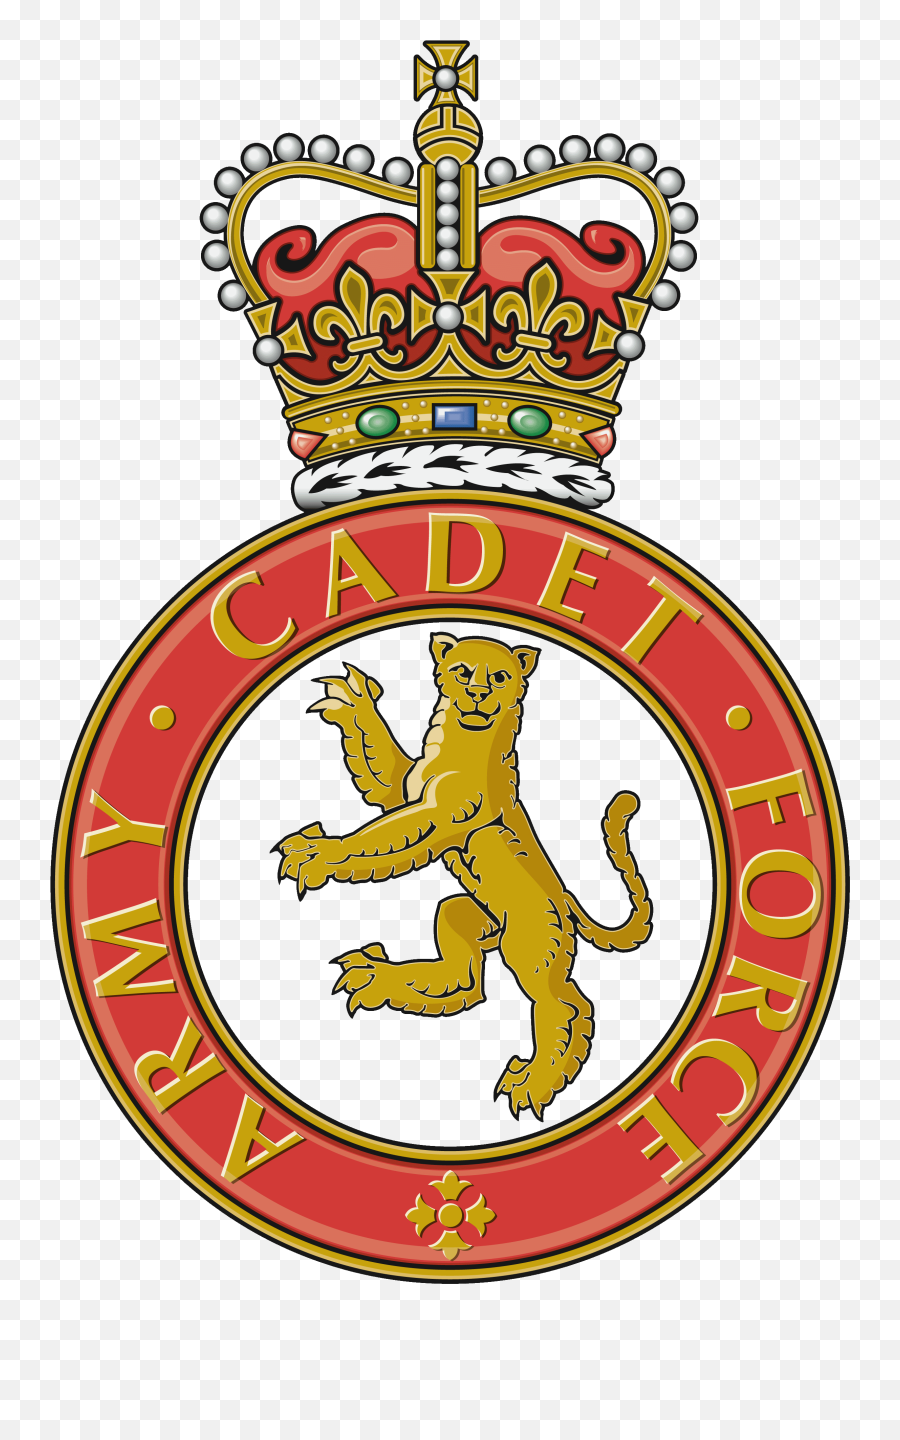 Army Cadet Force - Wikipedia Army Cadet Force Logo Emoji,Bts Army Logo